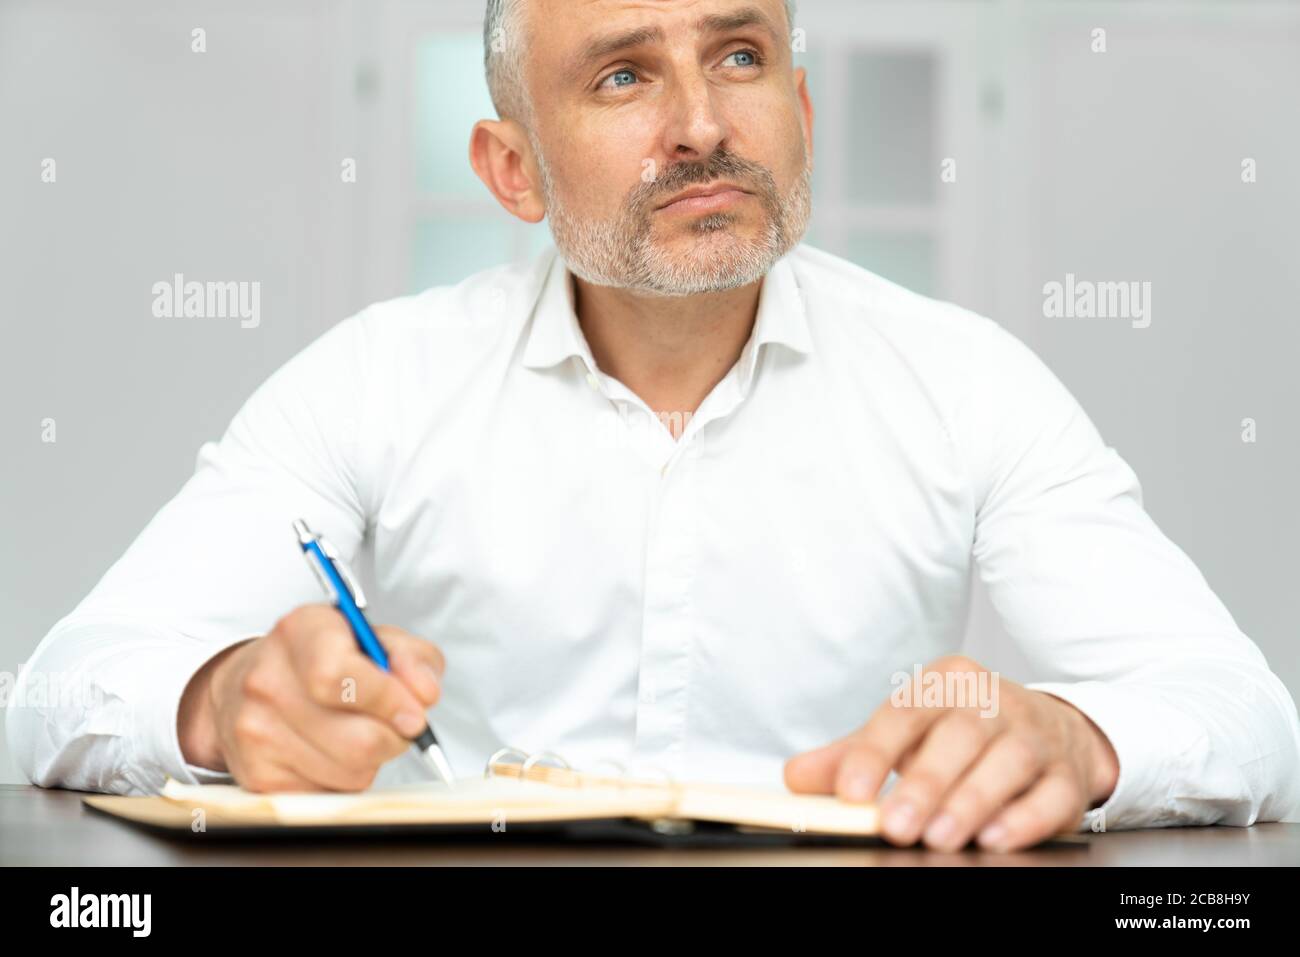 Dal basso di un elettricista etnico carismatico in camicia bianca con la penna in mano che crea un progetto sul posto di lavoro Foto Stock